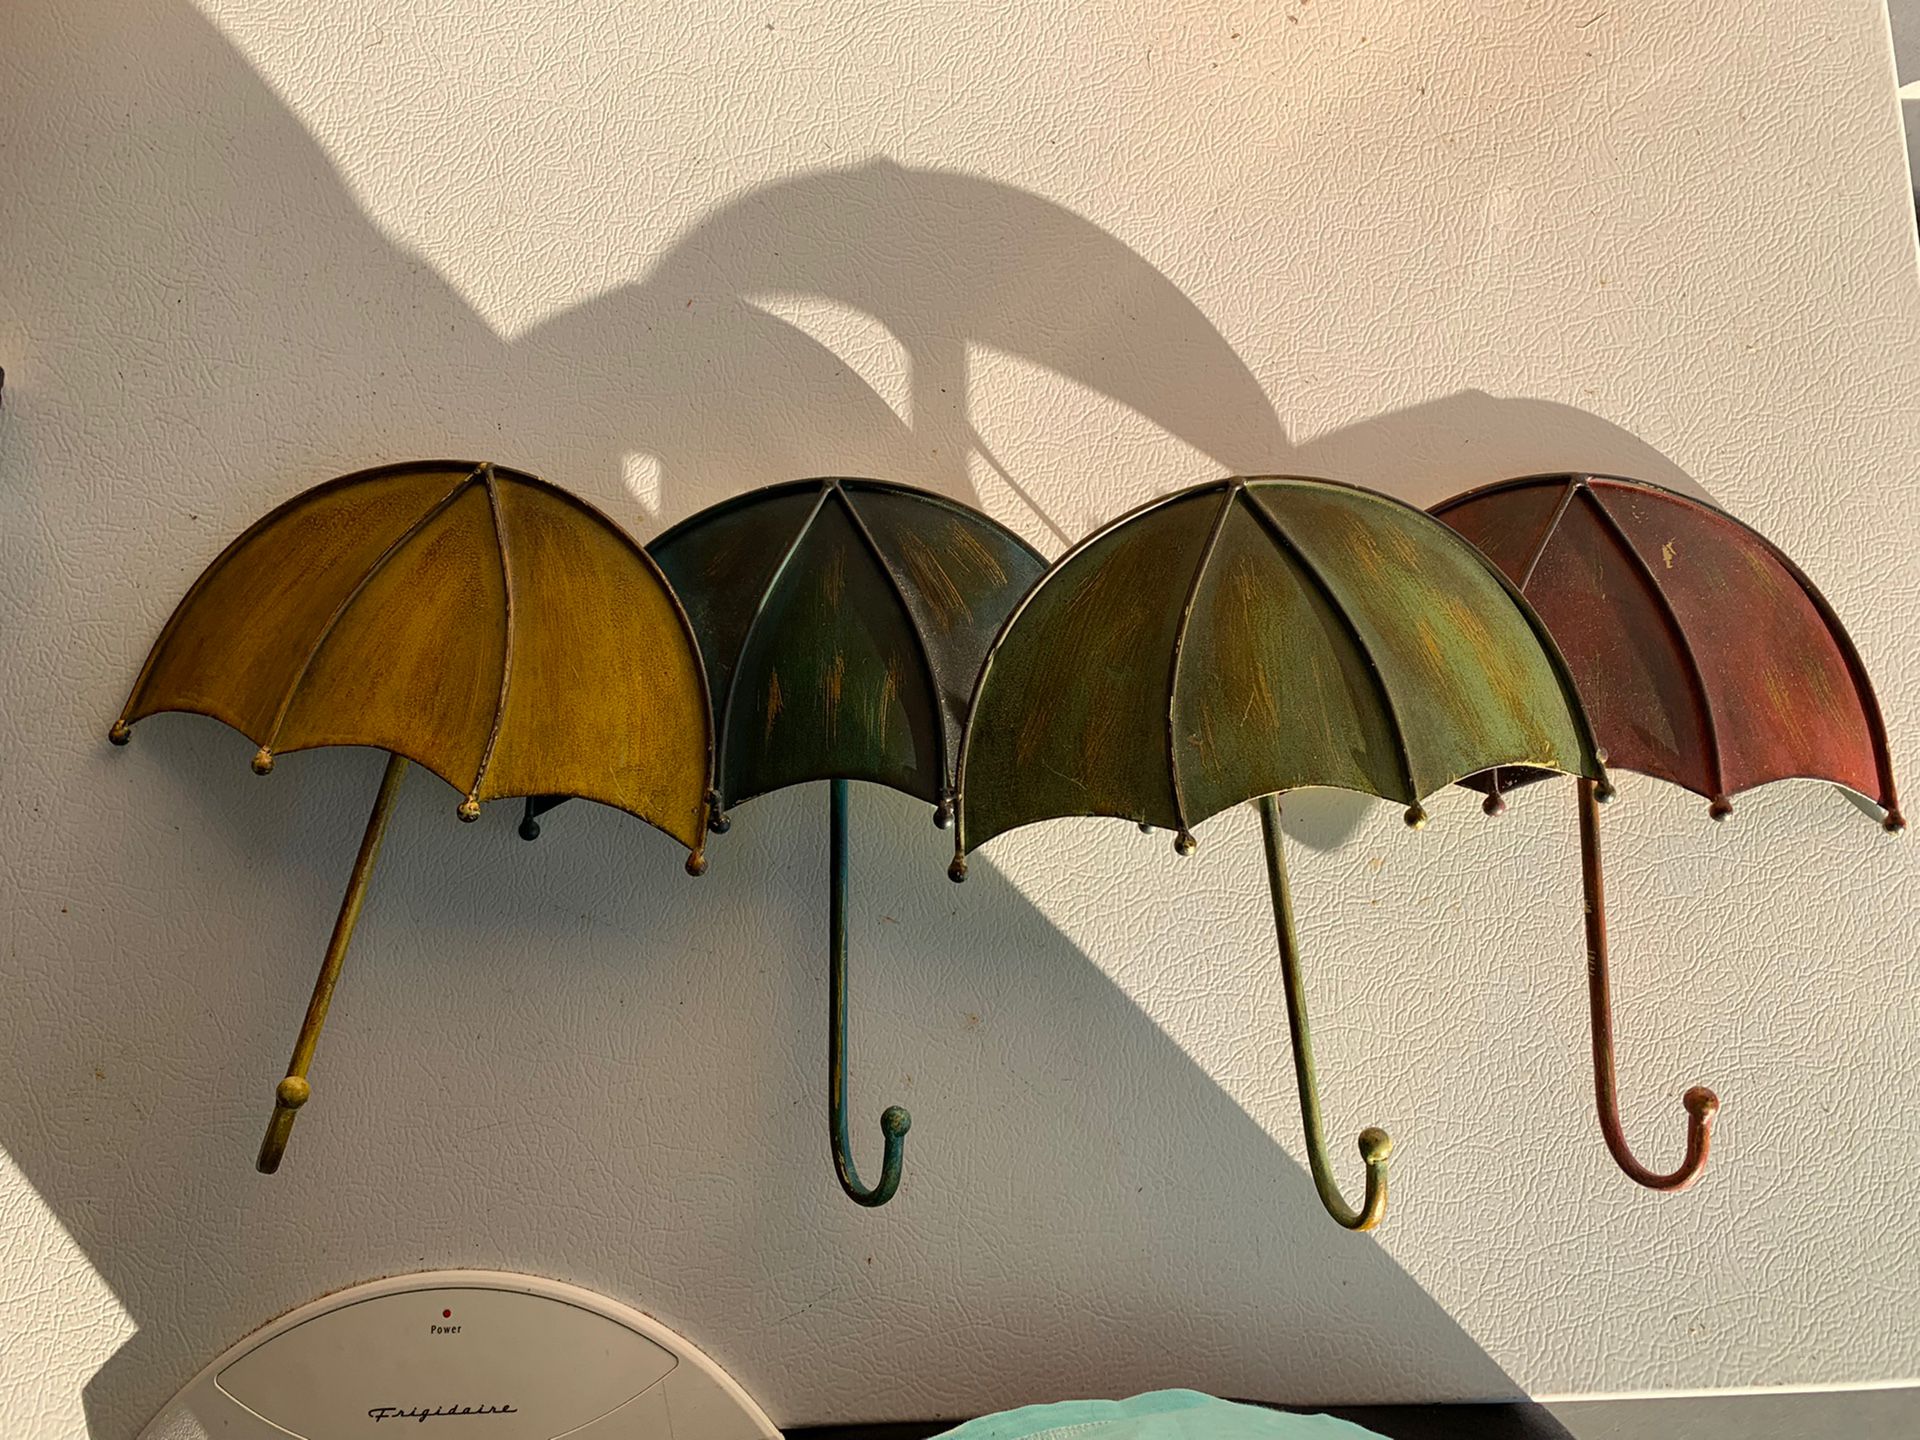 Hanging Umbrella Wall Decor